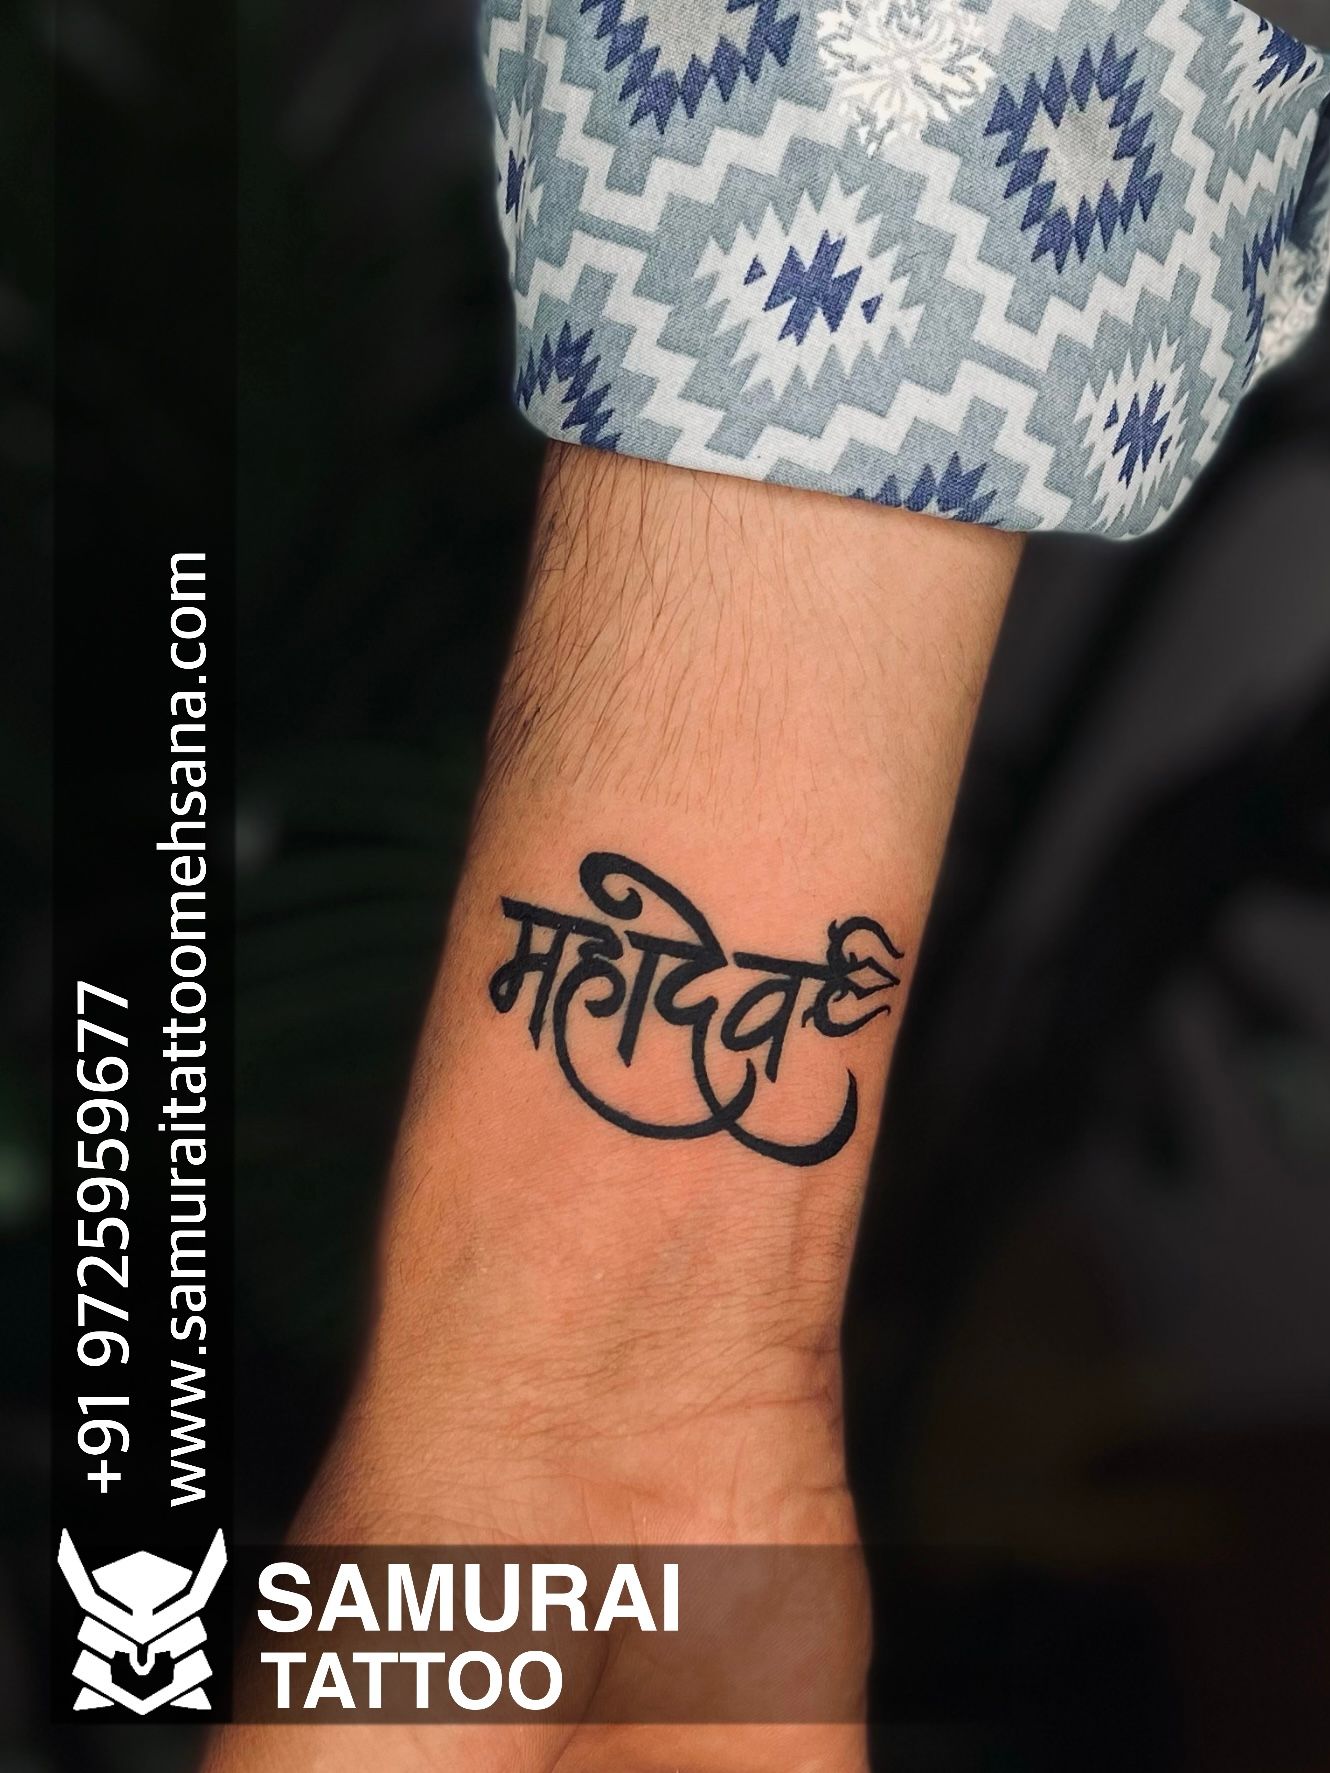 Bholenath Da Tattoo (feat. Raviraj) - Arick | Shazam